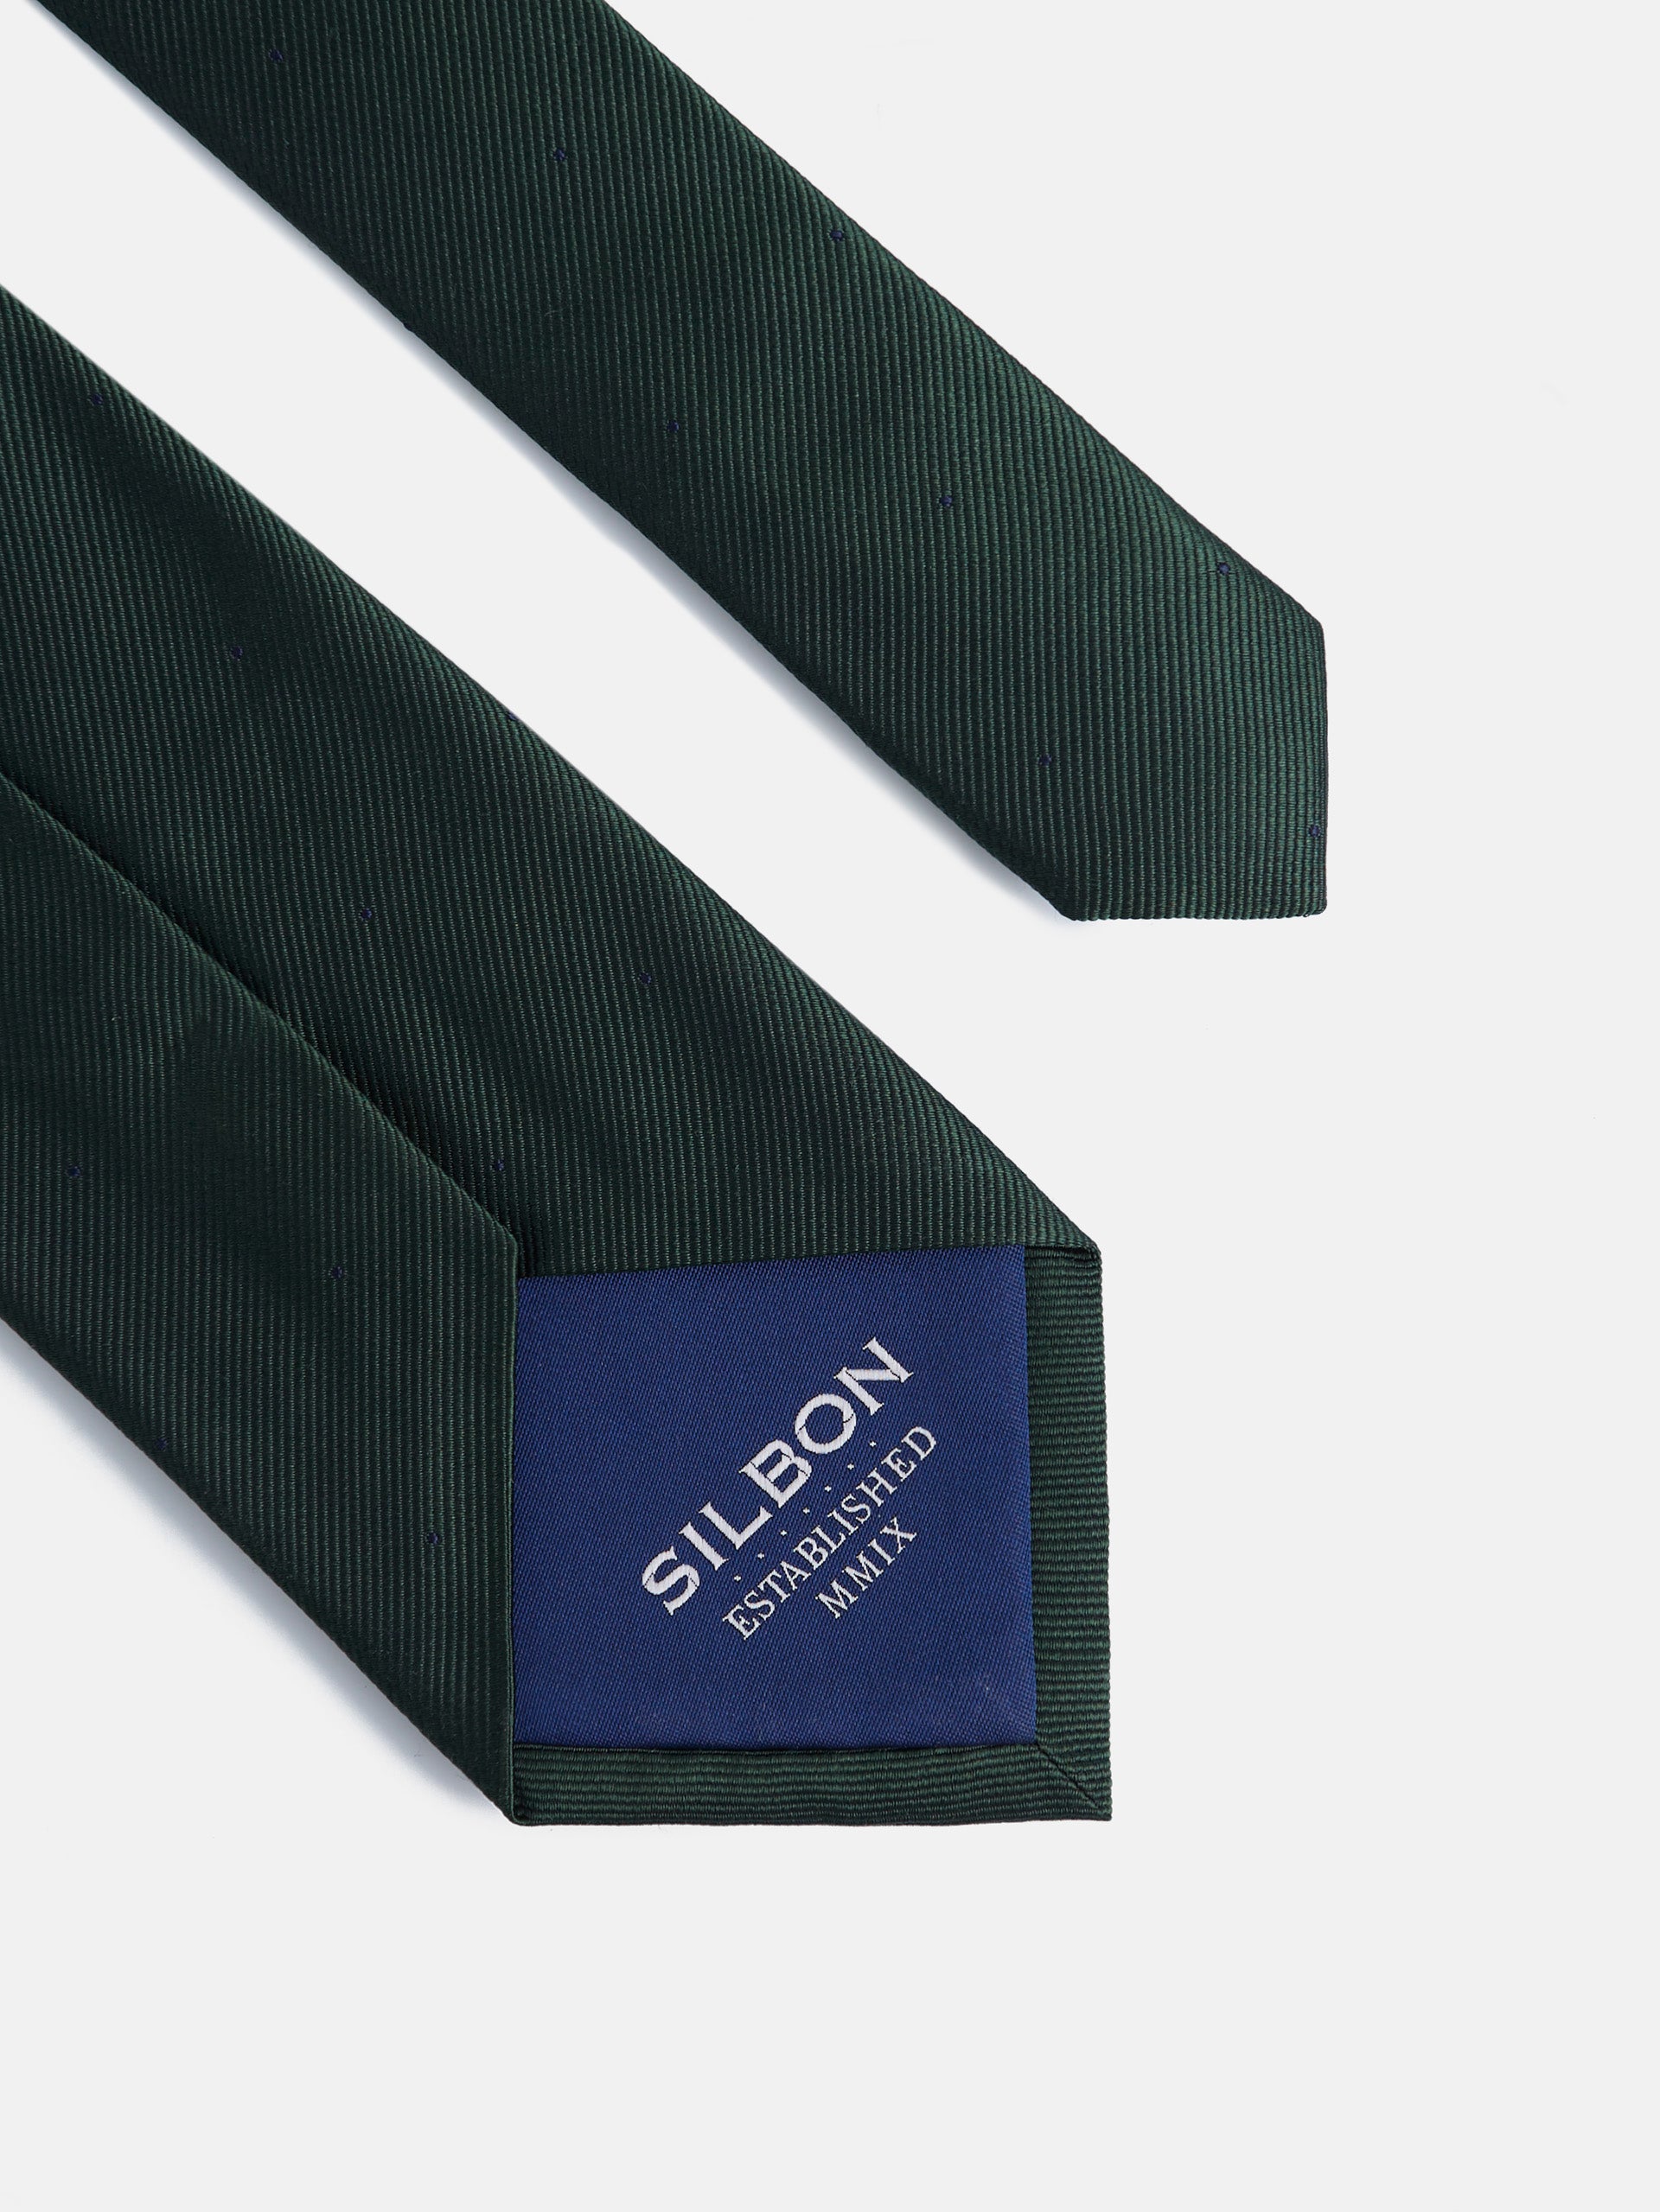 Corbata silbon lunares verde